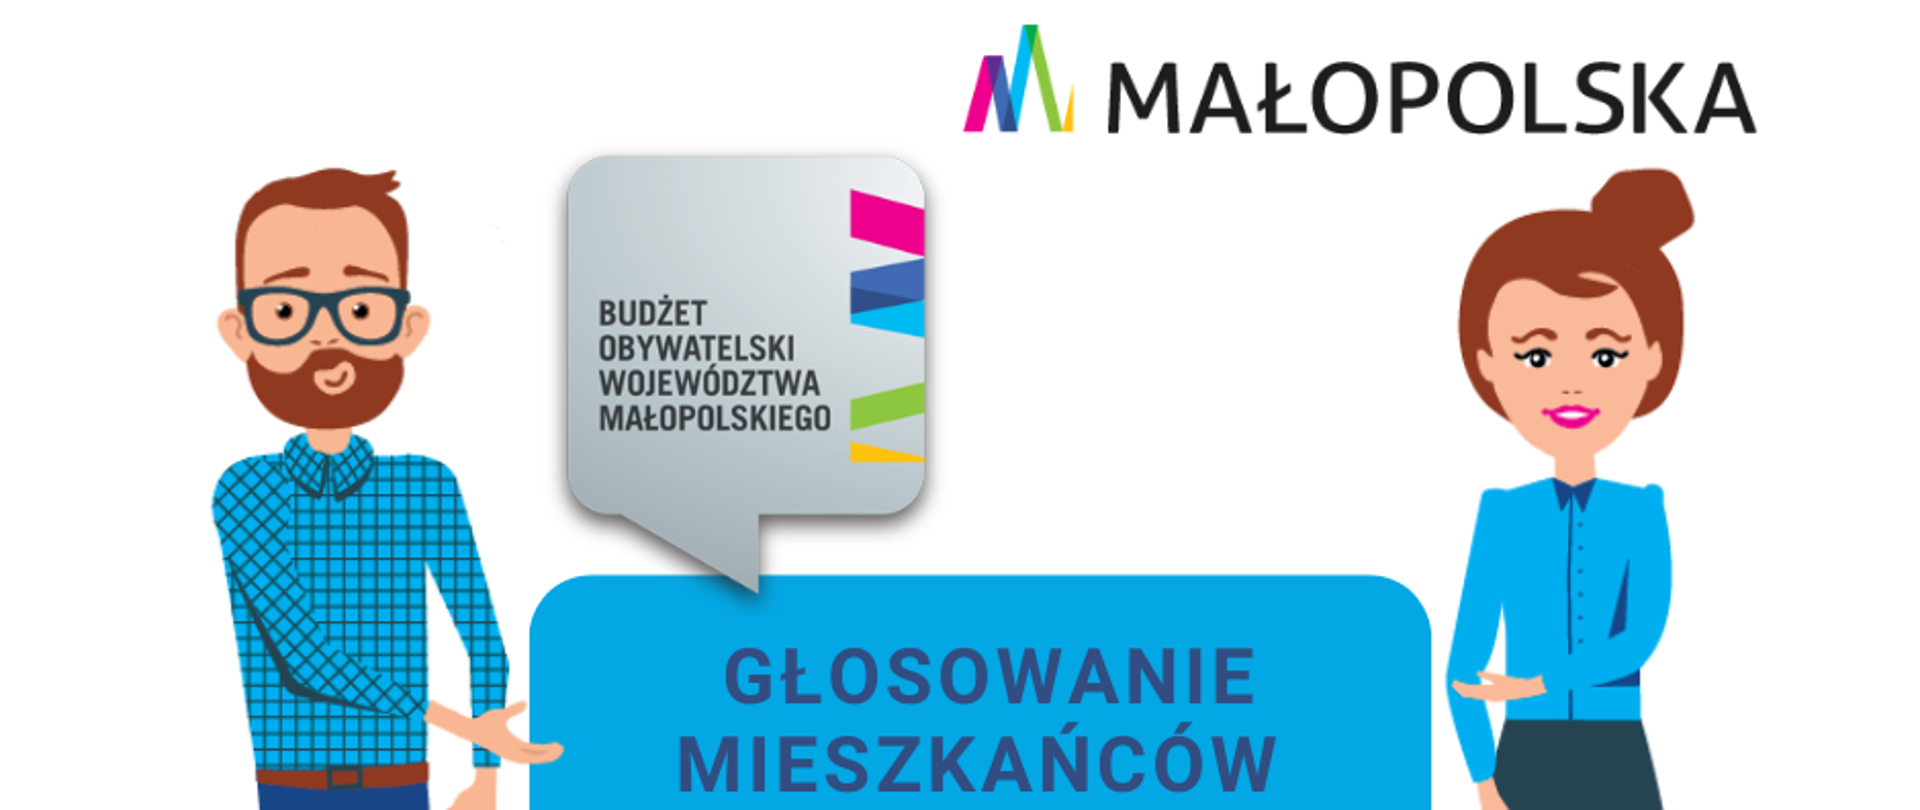 Rysunkowe postaci kobiety i mężczyzny wskazują na napis Głosowanie mieszkańców 15 maja do 14 czerwca, u góry logo Małopolski, na dole napis 7 edycja Budżetu Obywatelskiego Województwa Małopolskiego